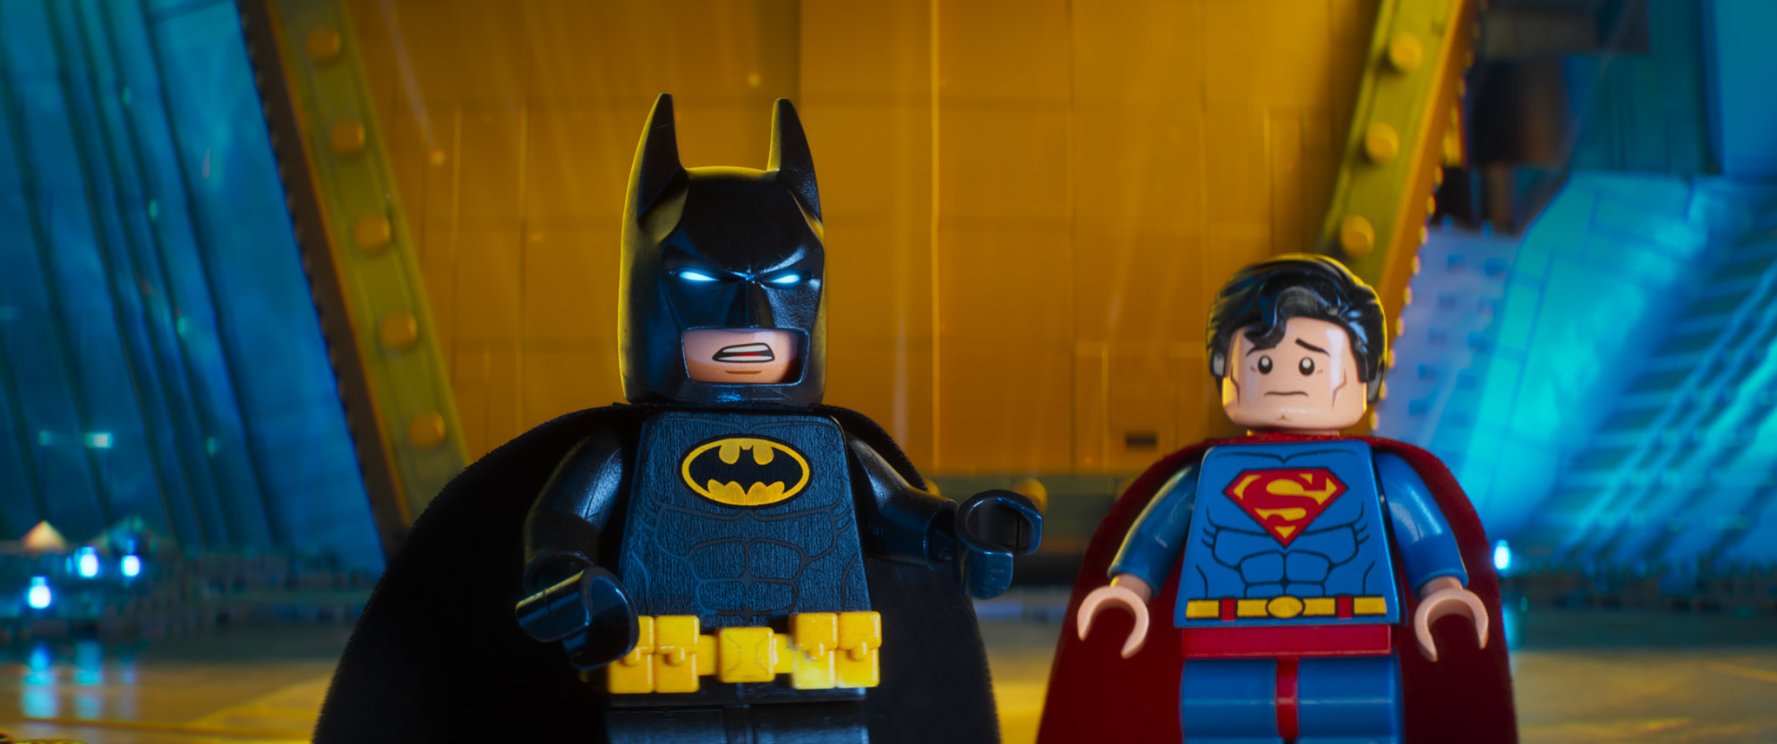 Лего Фильм: Бэтмен, кадр № 13